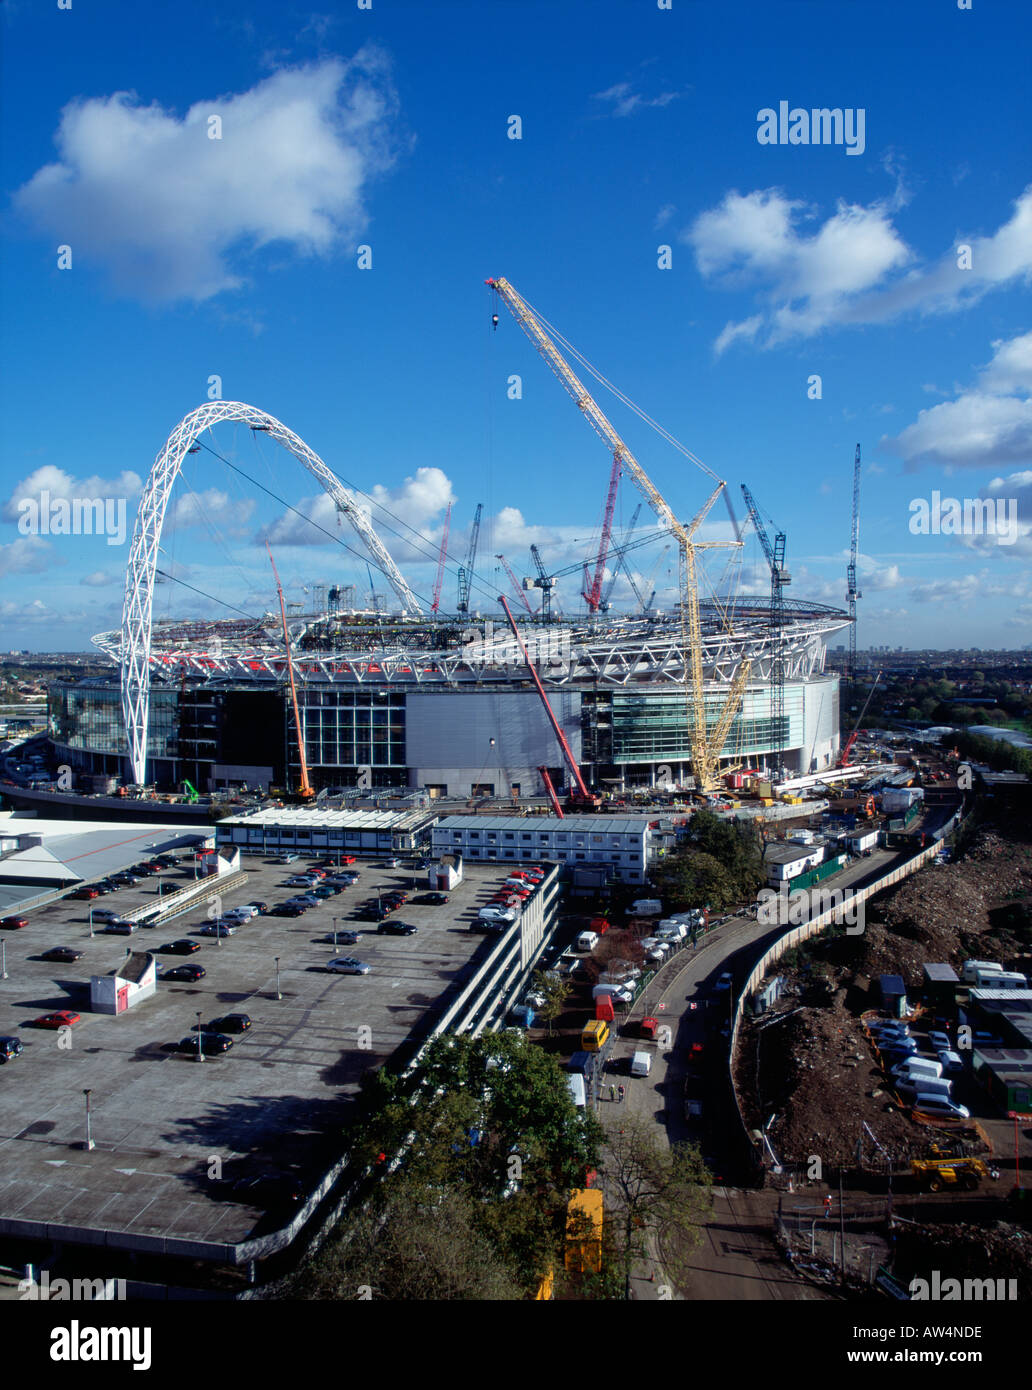 Le stade de Wembley en construction Novembre 2005, vue aérienne Banque D'Images